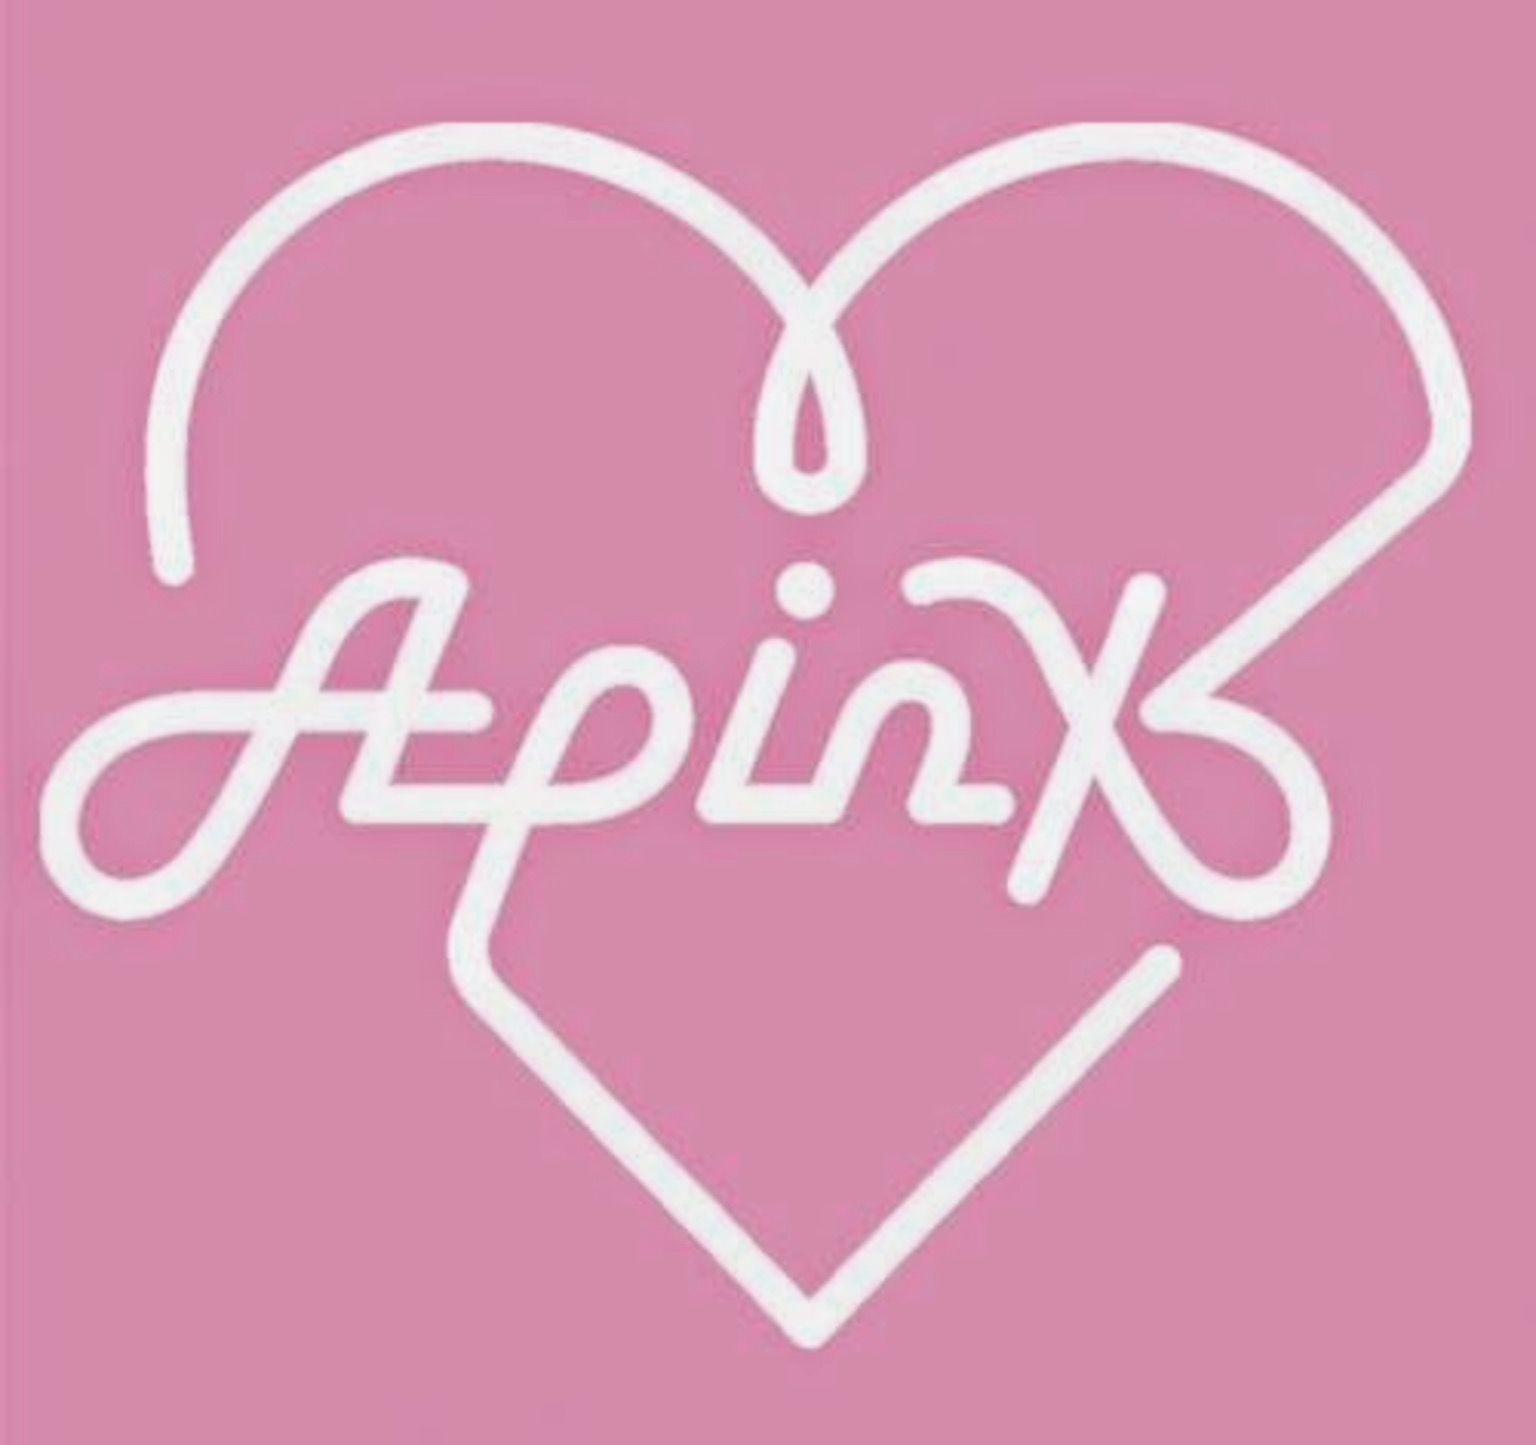 Apink Logo - Apink logo | Apink kpop !! | Logos, Kpop logos, Band logos